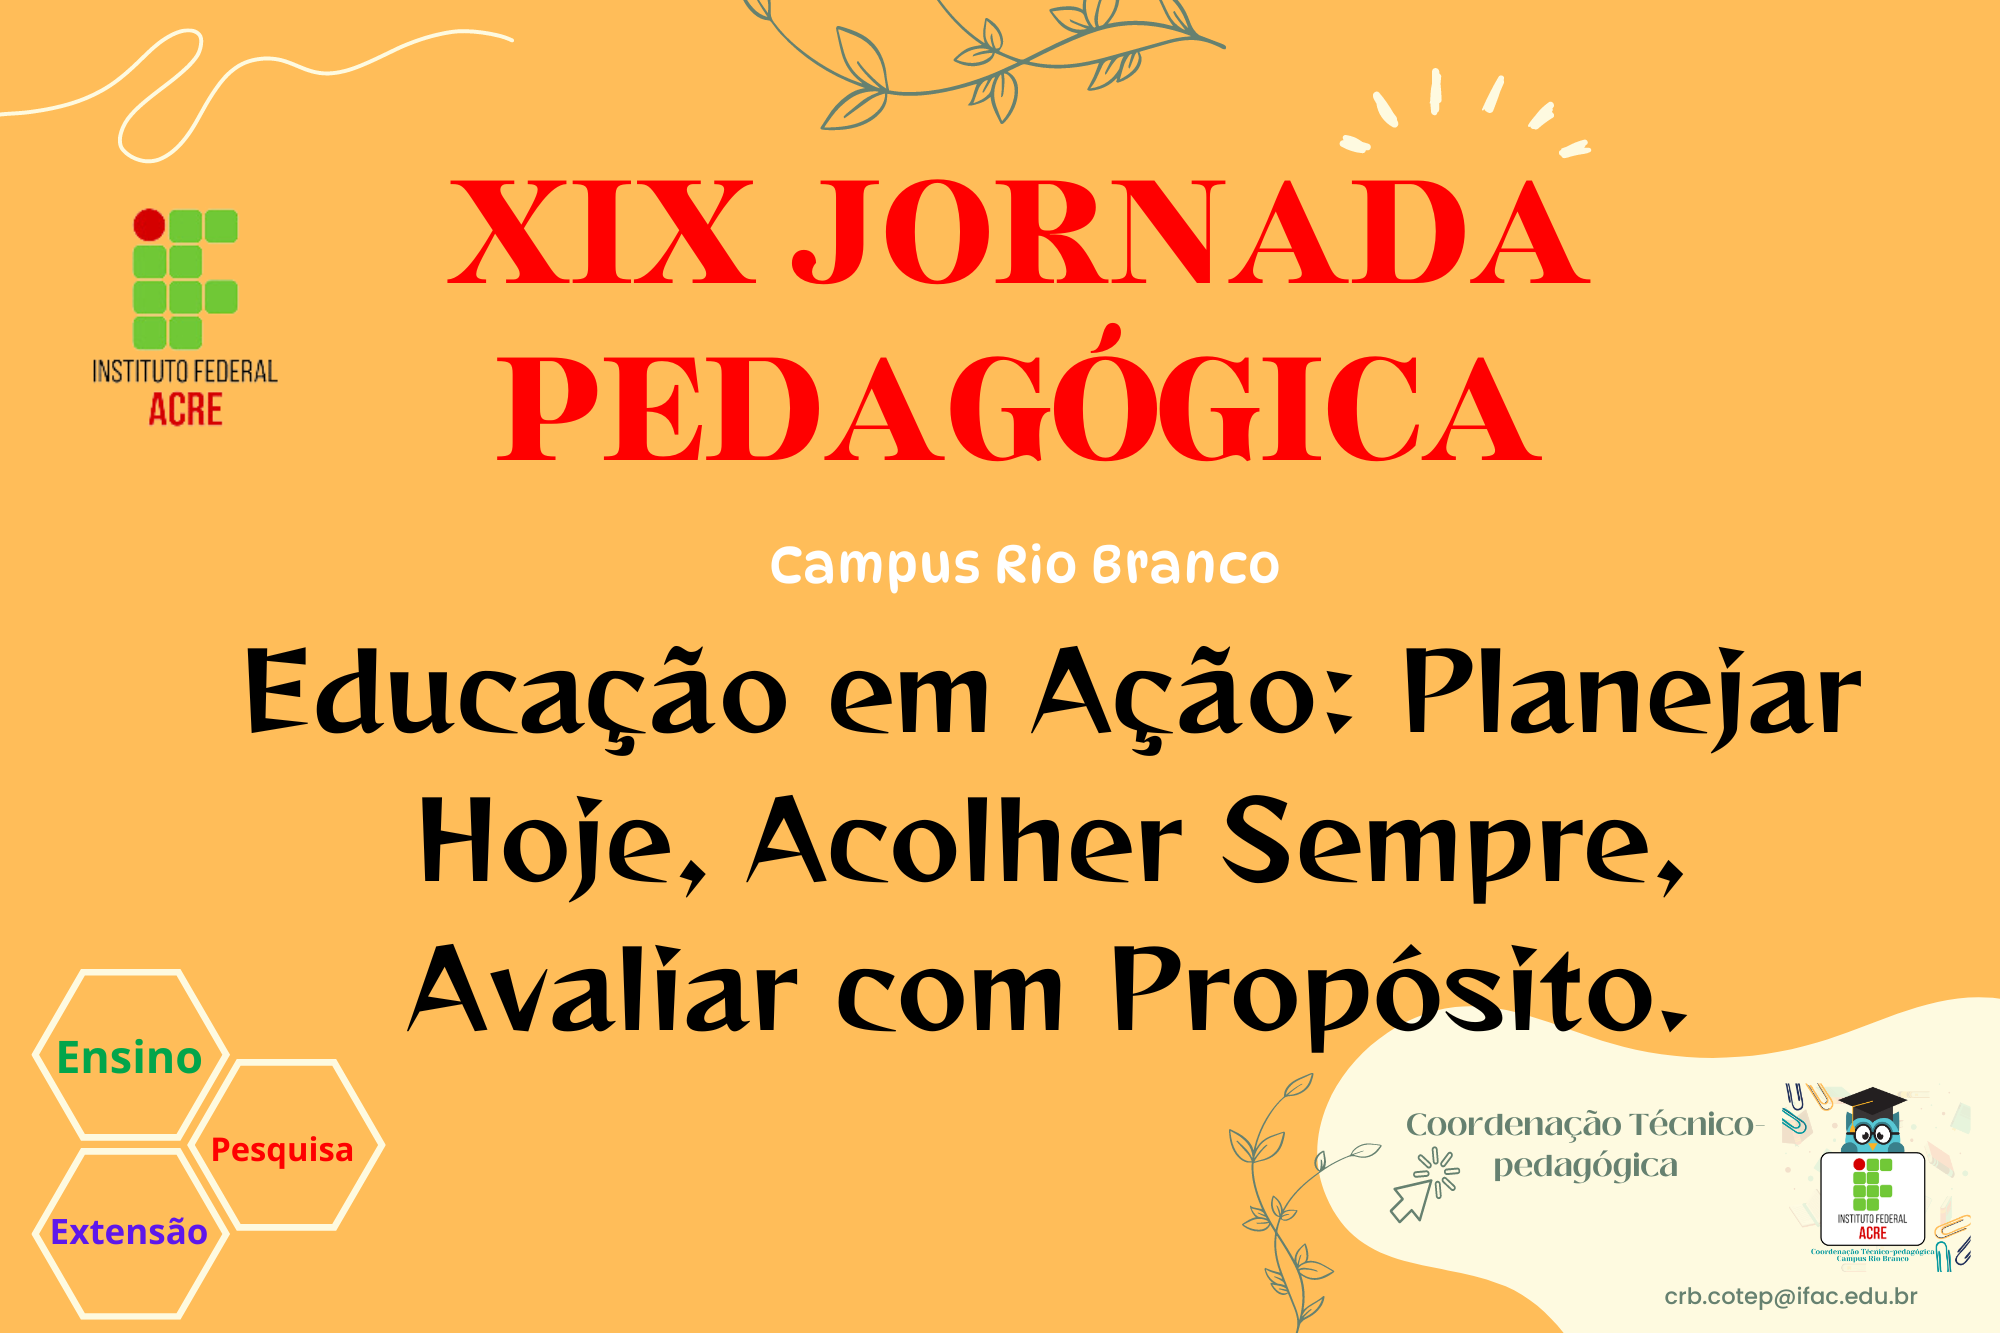 XIX Jornada Pedagógica do campus Rio Branco - Educação em Ação: Planejar Hoje, Acolher Sempre, Avaliar com Propósito.